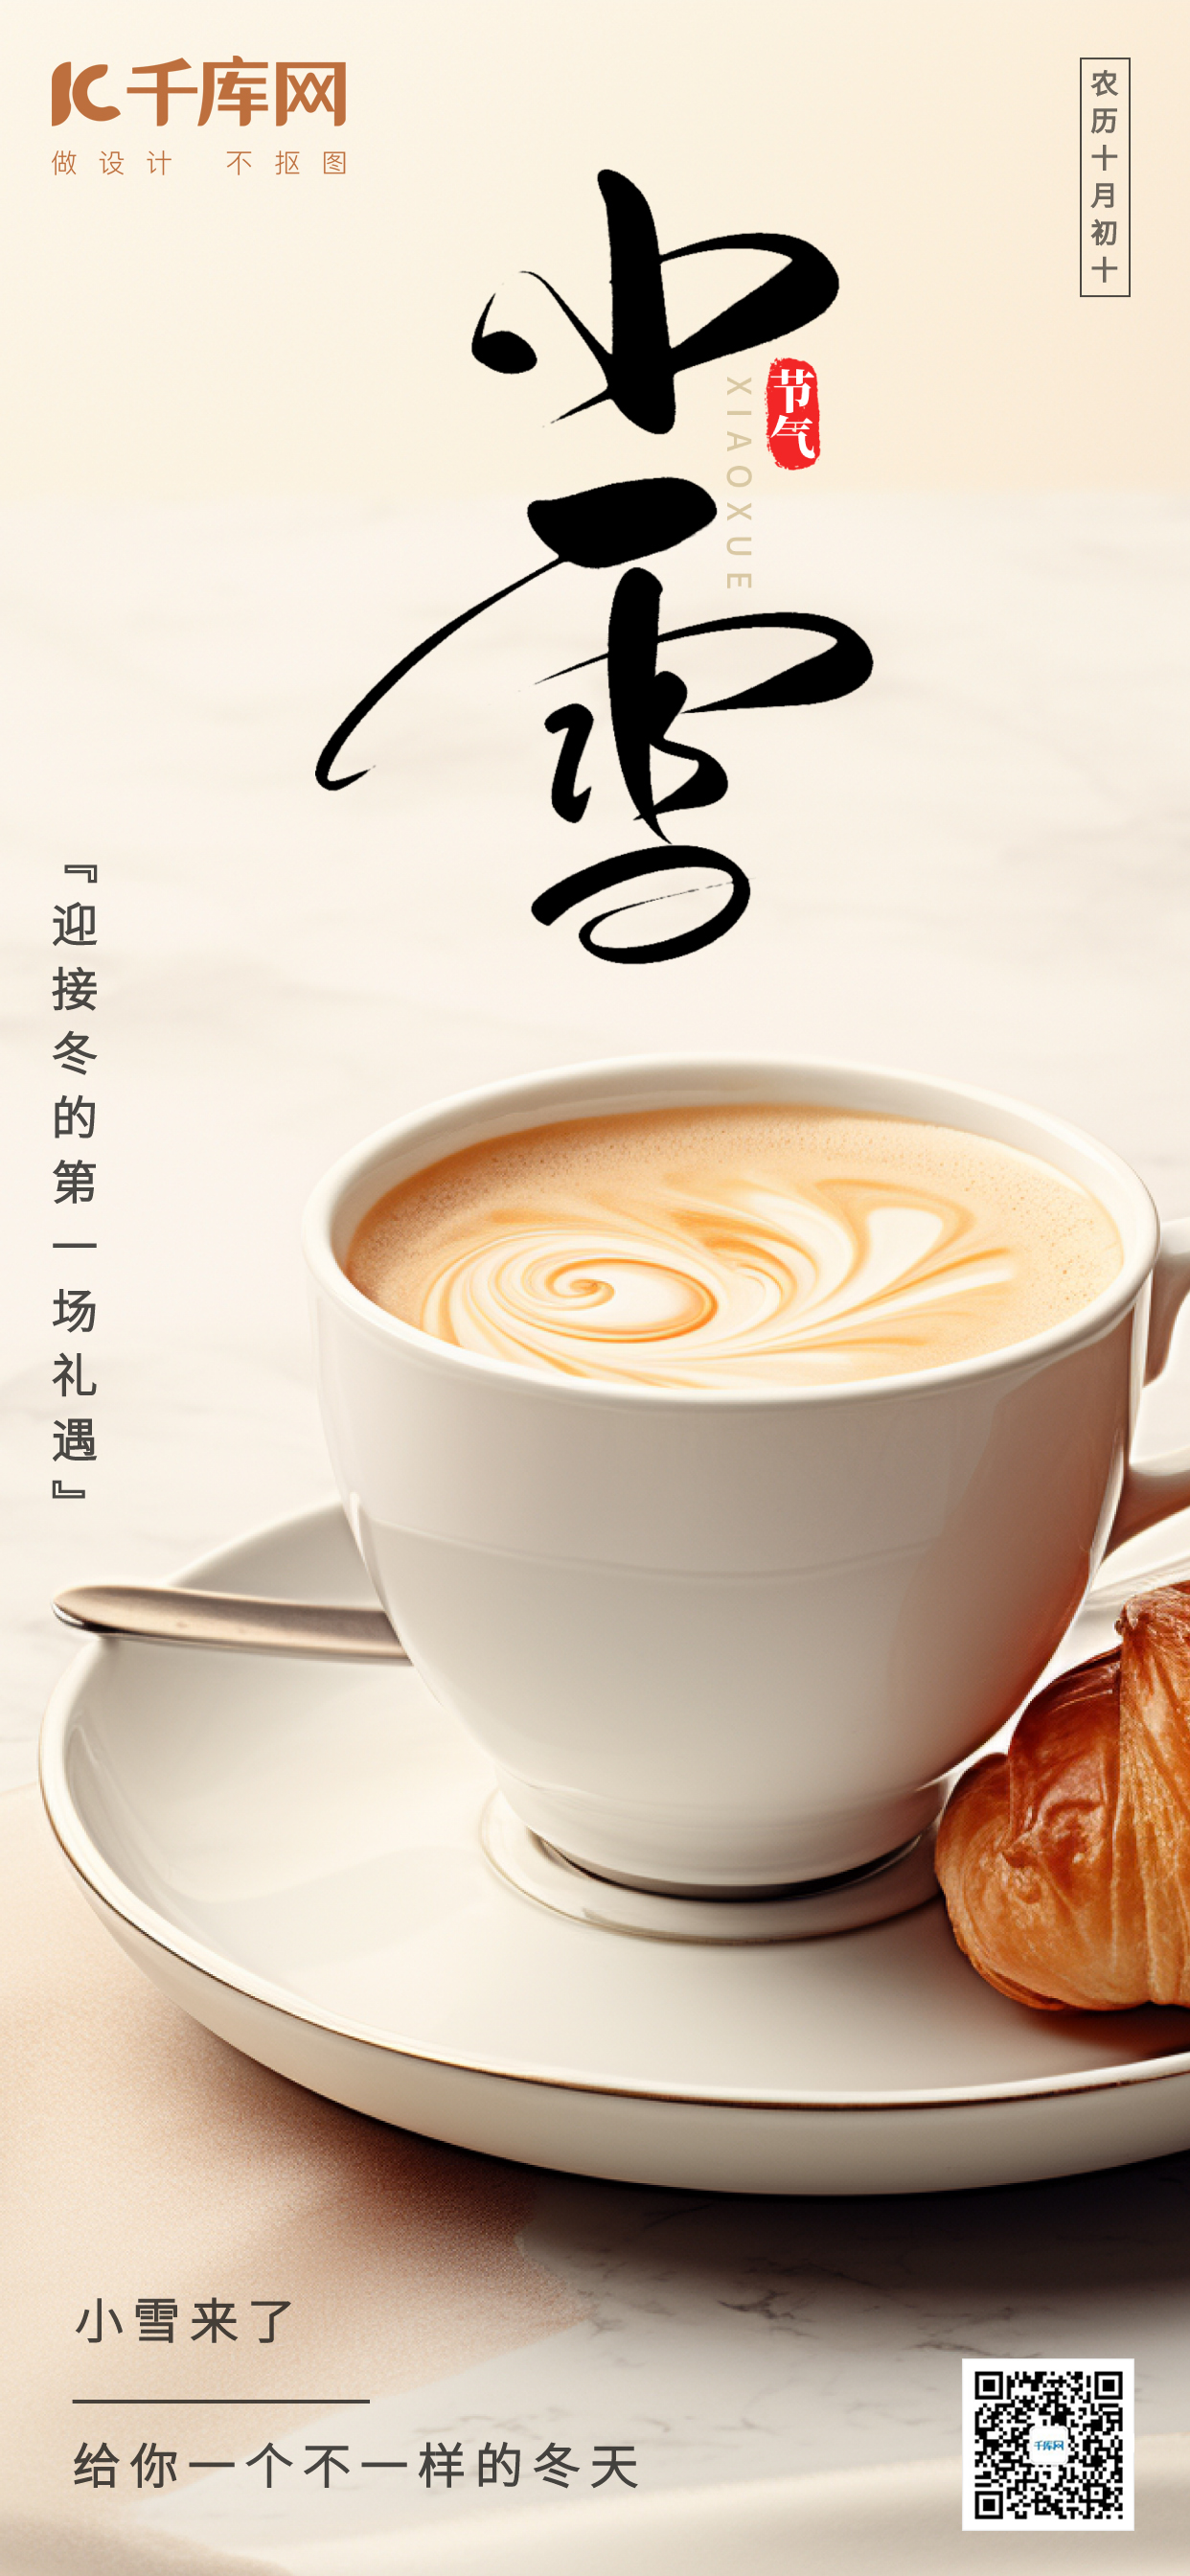 小雪小雪咖啡白色手绘AIGC广告宣传海报图片